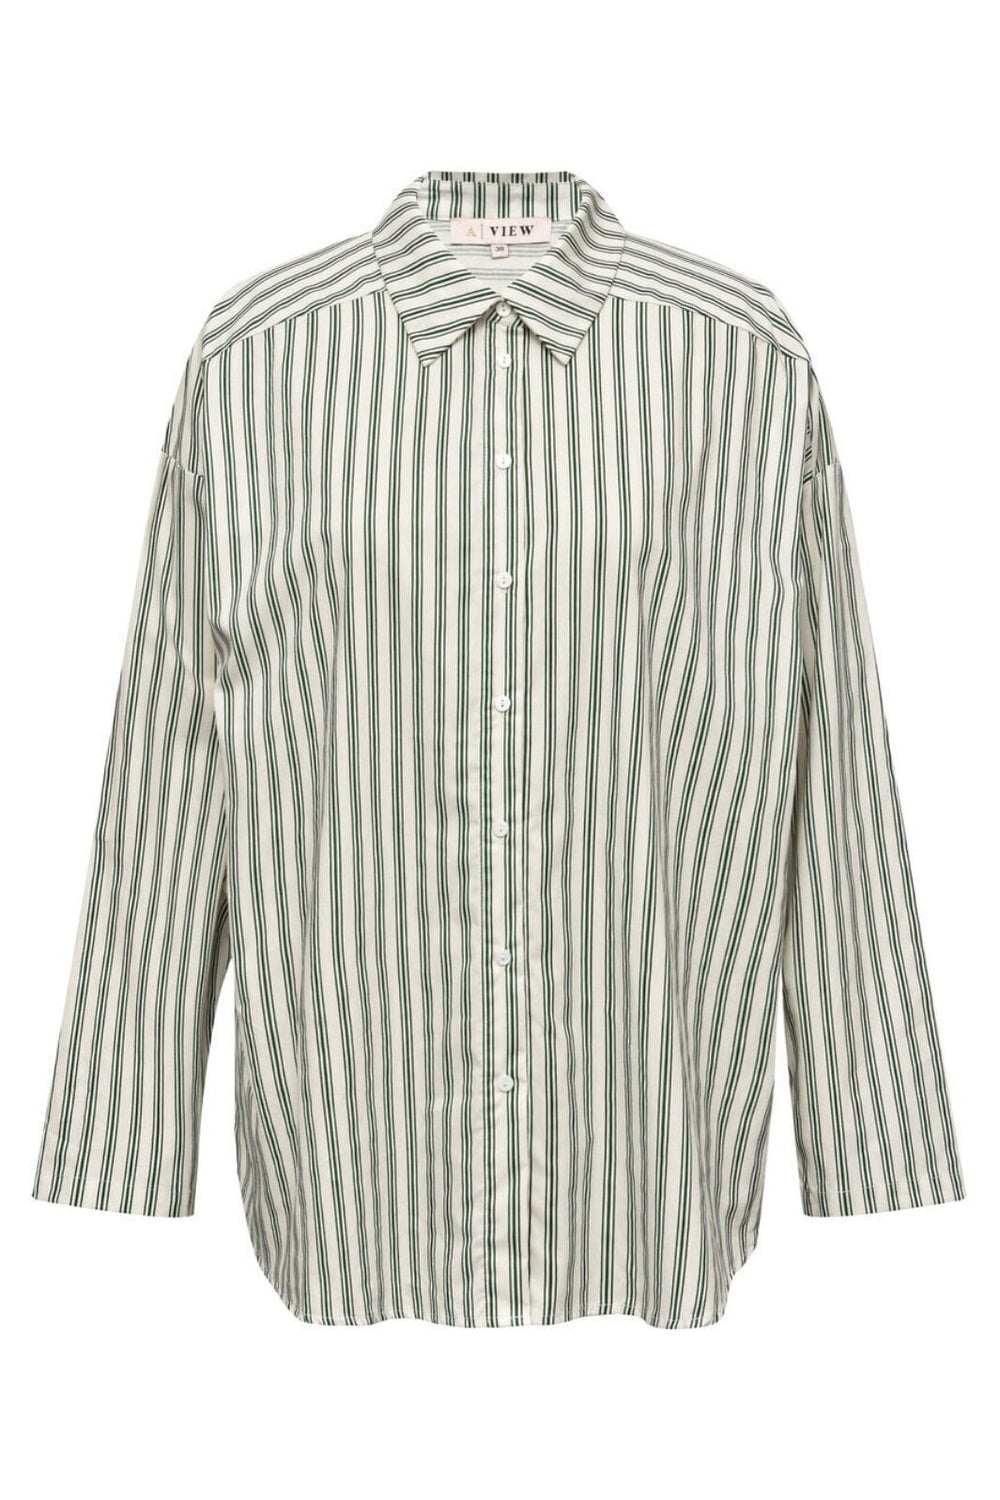 A-VIEW - Brenda Shirt - 856 Green/Sand Skjorter 